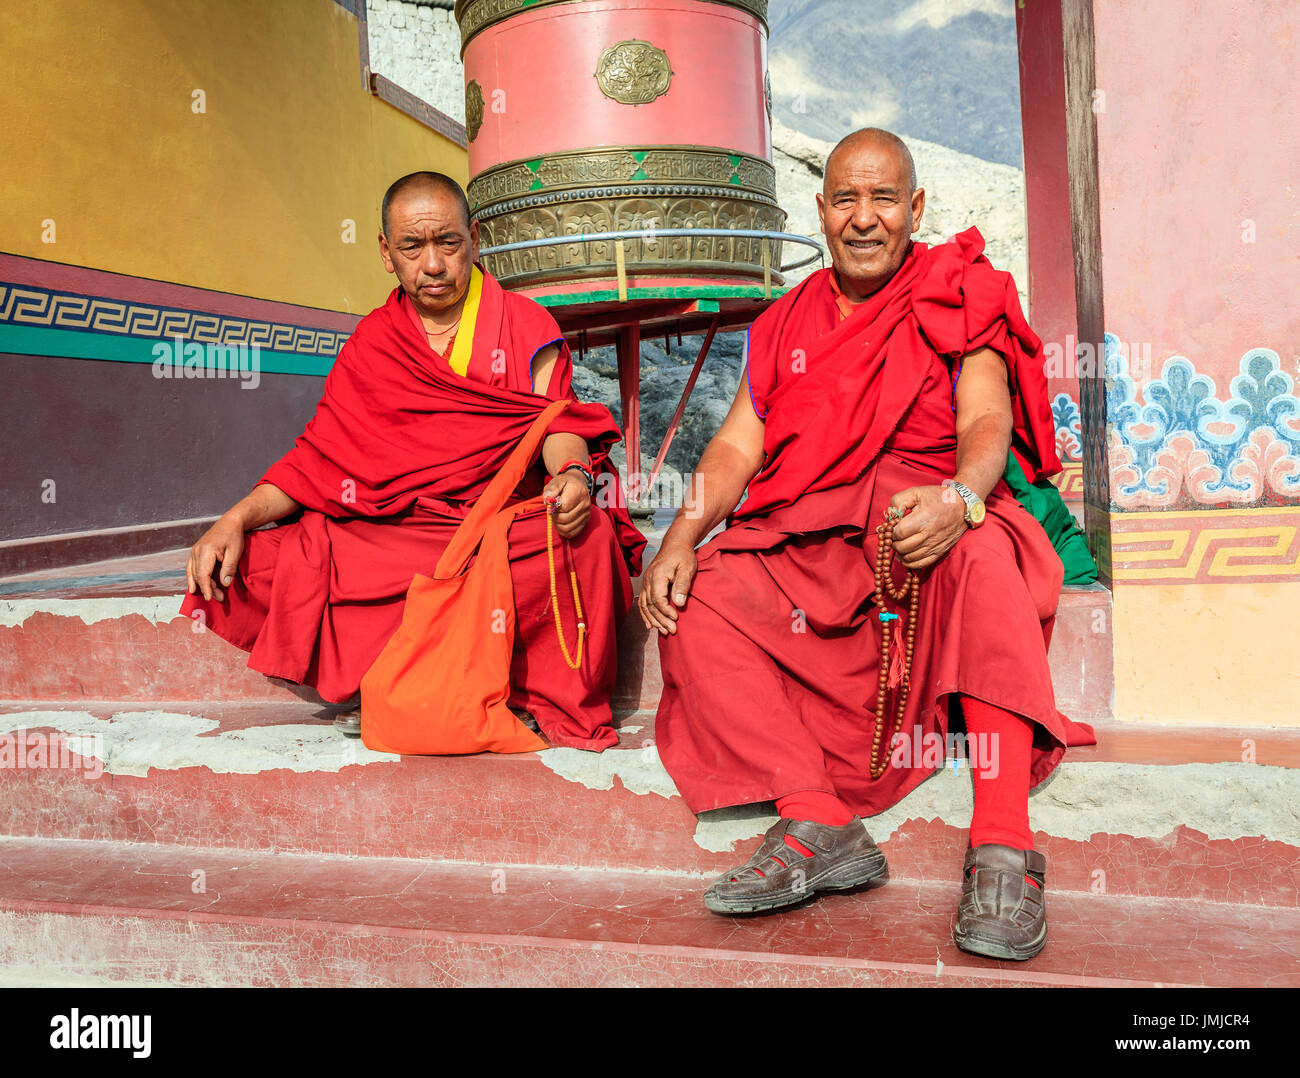 La Vallée de Nubra, Ladakh, Inde, le 14 juillet 2016 : deux moines de l'emplacement d'un tambour en priant au Ladakh Monastère Diskit région du Cachemire, l'Inde Banque D'Images